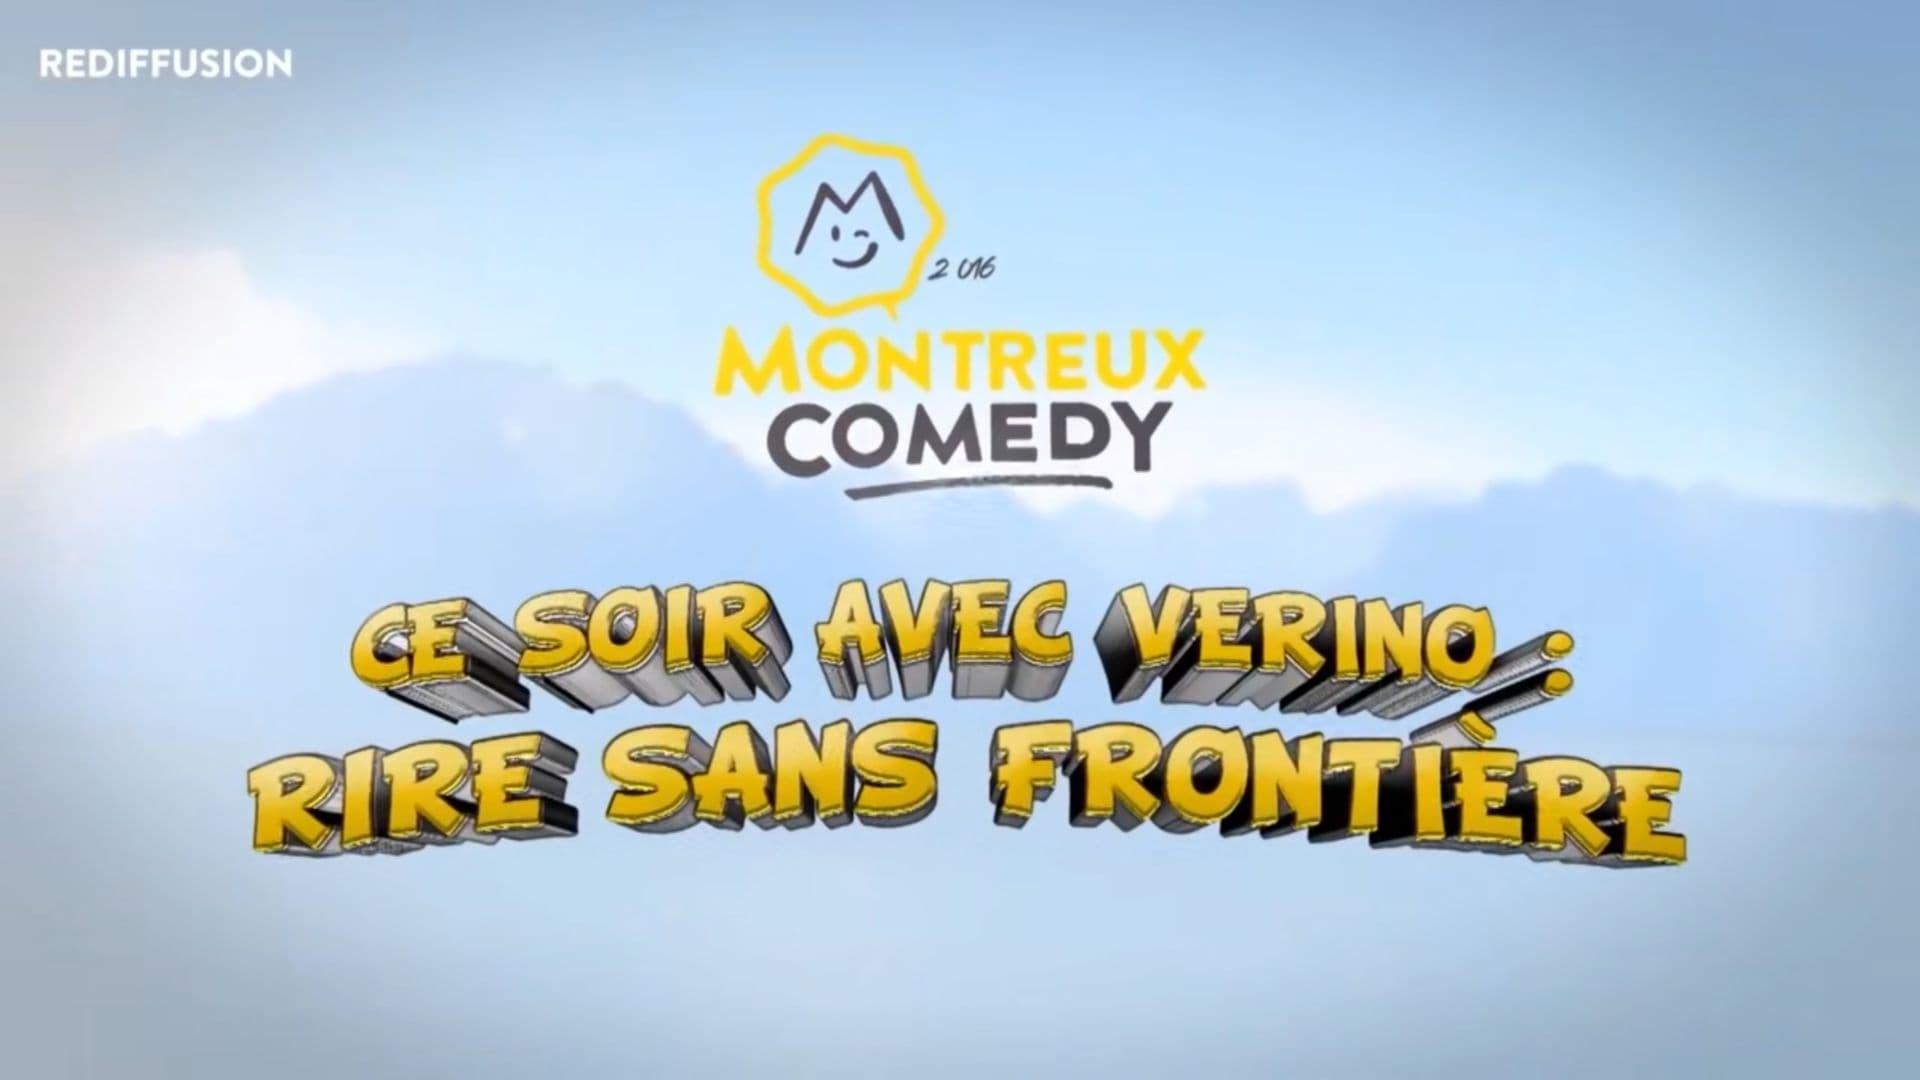 Montreux Comedy Festival 2016 - Ce soir avec Vérino : rire sans frontière backdrop